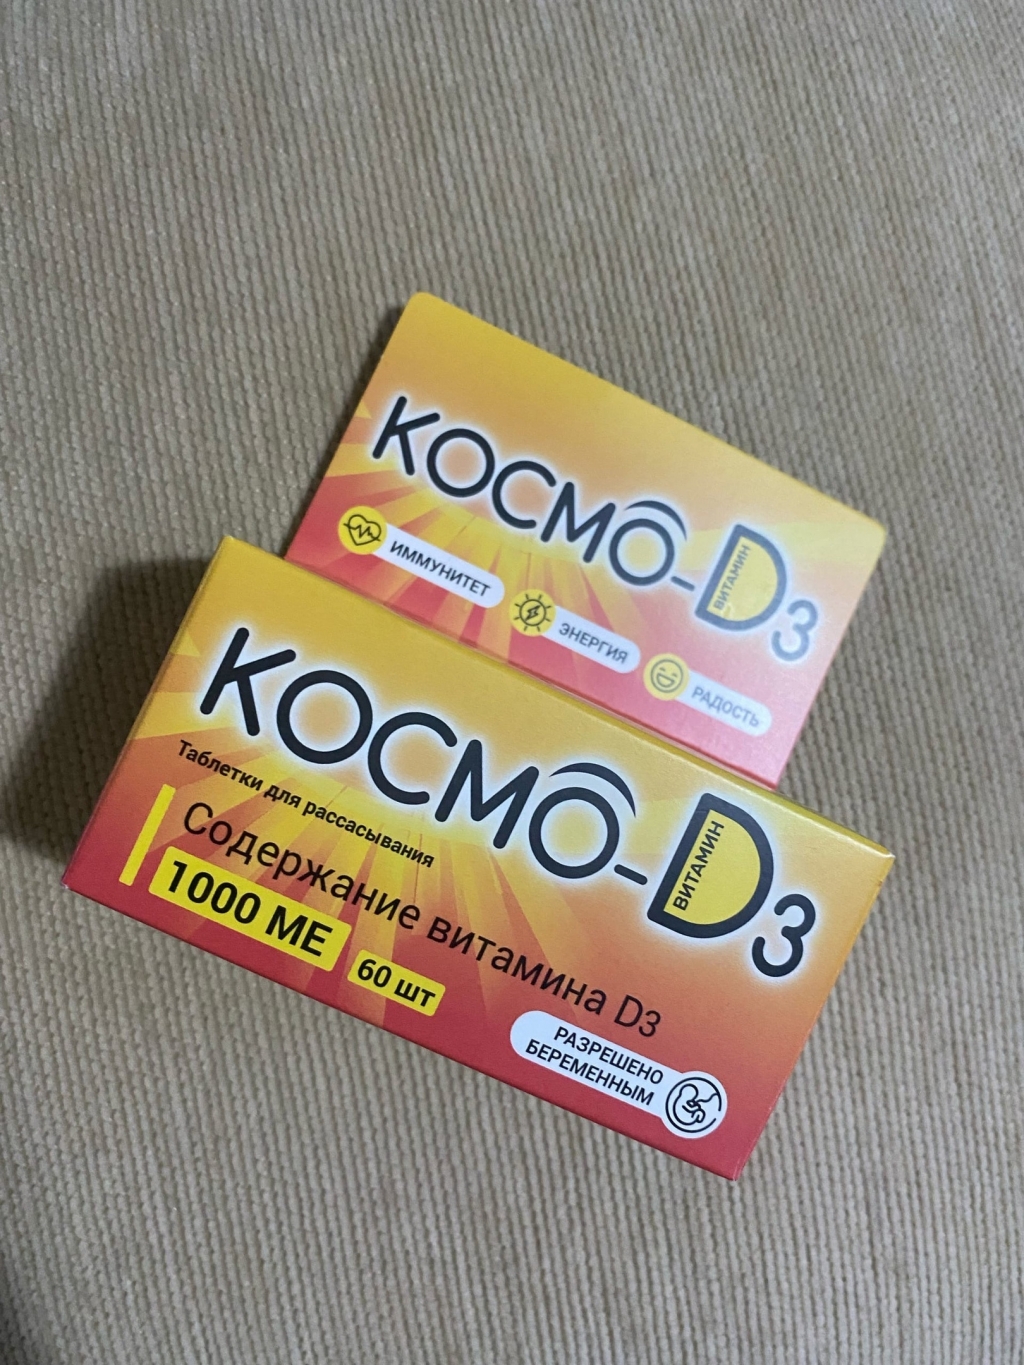 Космо D3 - Космо Д3 для грустящего без солнца и витамина Д иммунитета